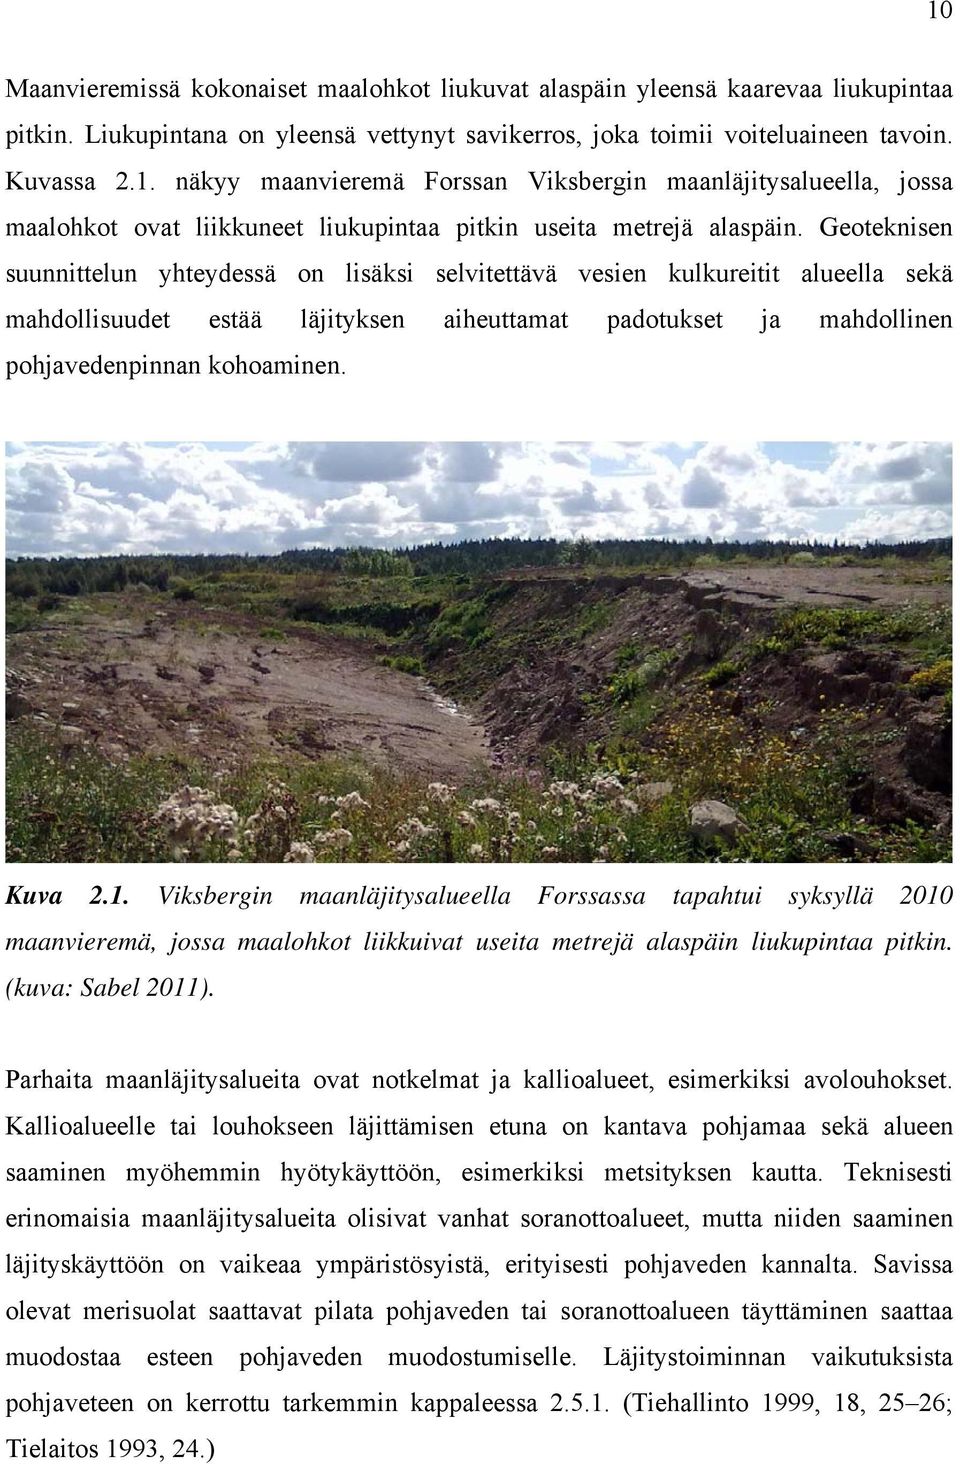 1. Viksbergin maanläjitysalueella Forssassa tapahtui syksyllä 2010 maanvieremä, jossa maalohkot liikkuivat useita metrejä alaspäin liukupintaa pitkin. (kuva: Sabel 2011).